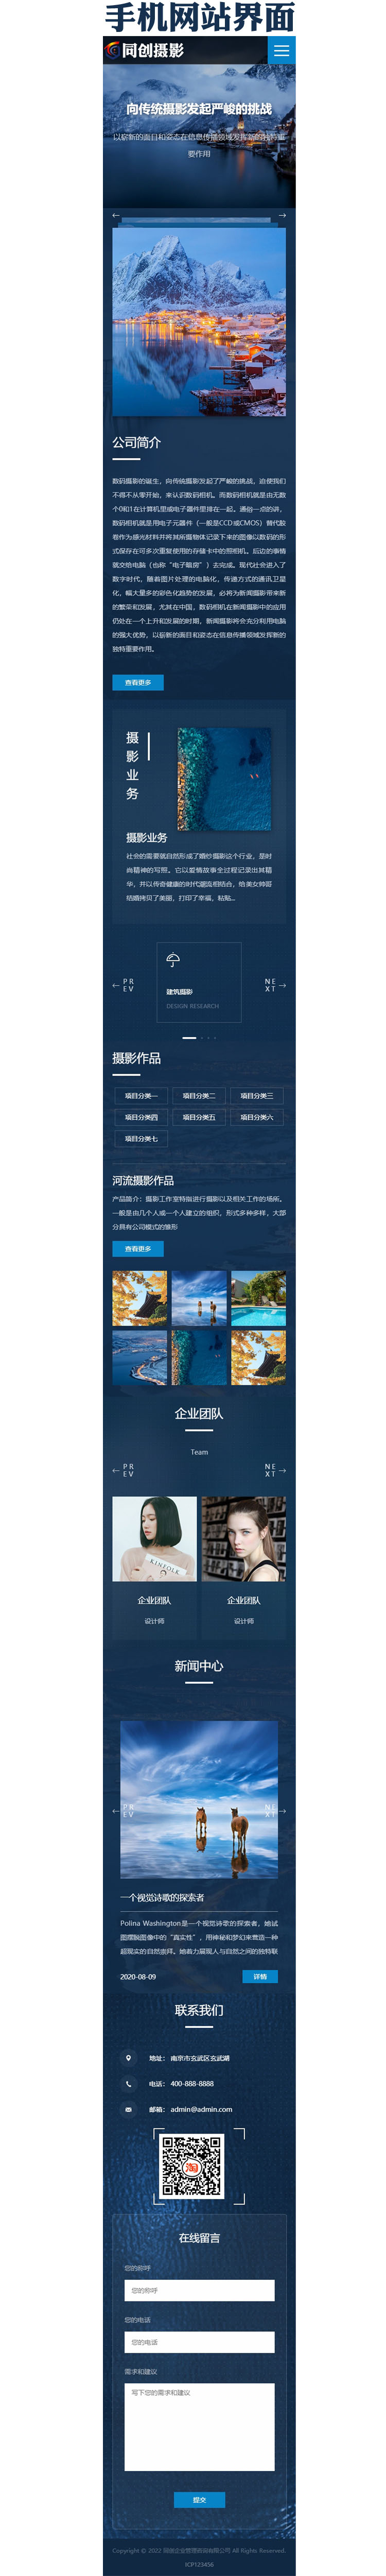 大气蓝色商业摄影网站源码程序-XX248-3